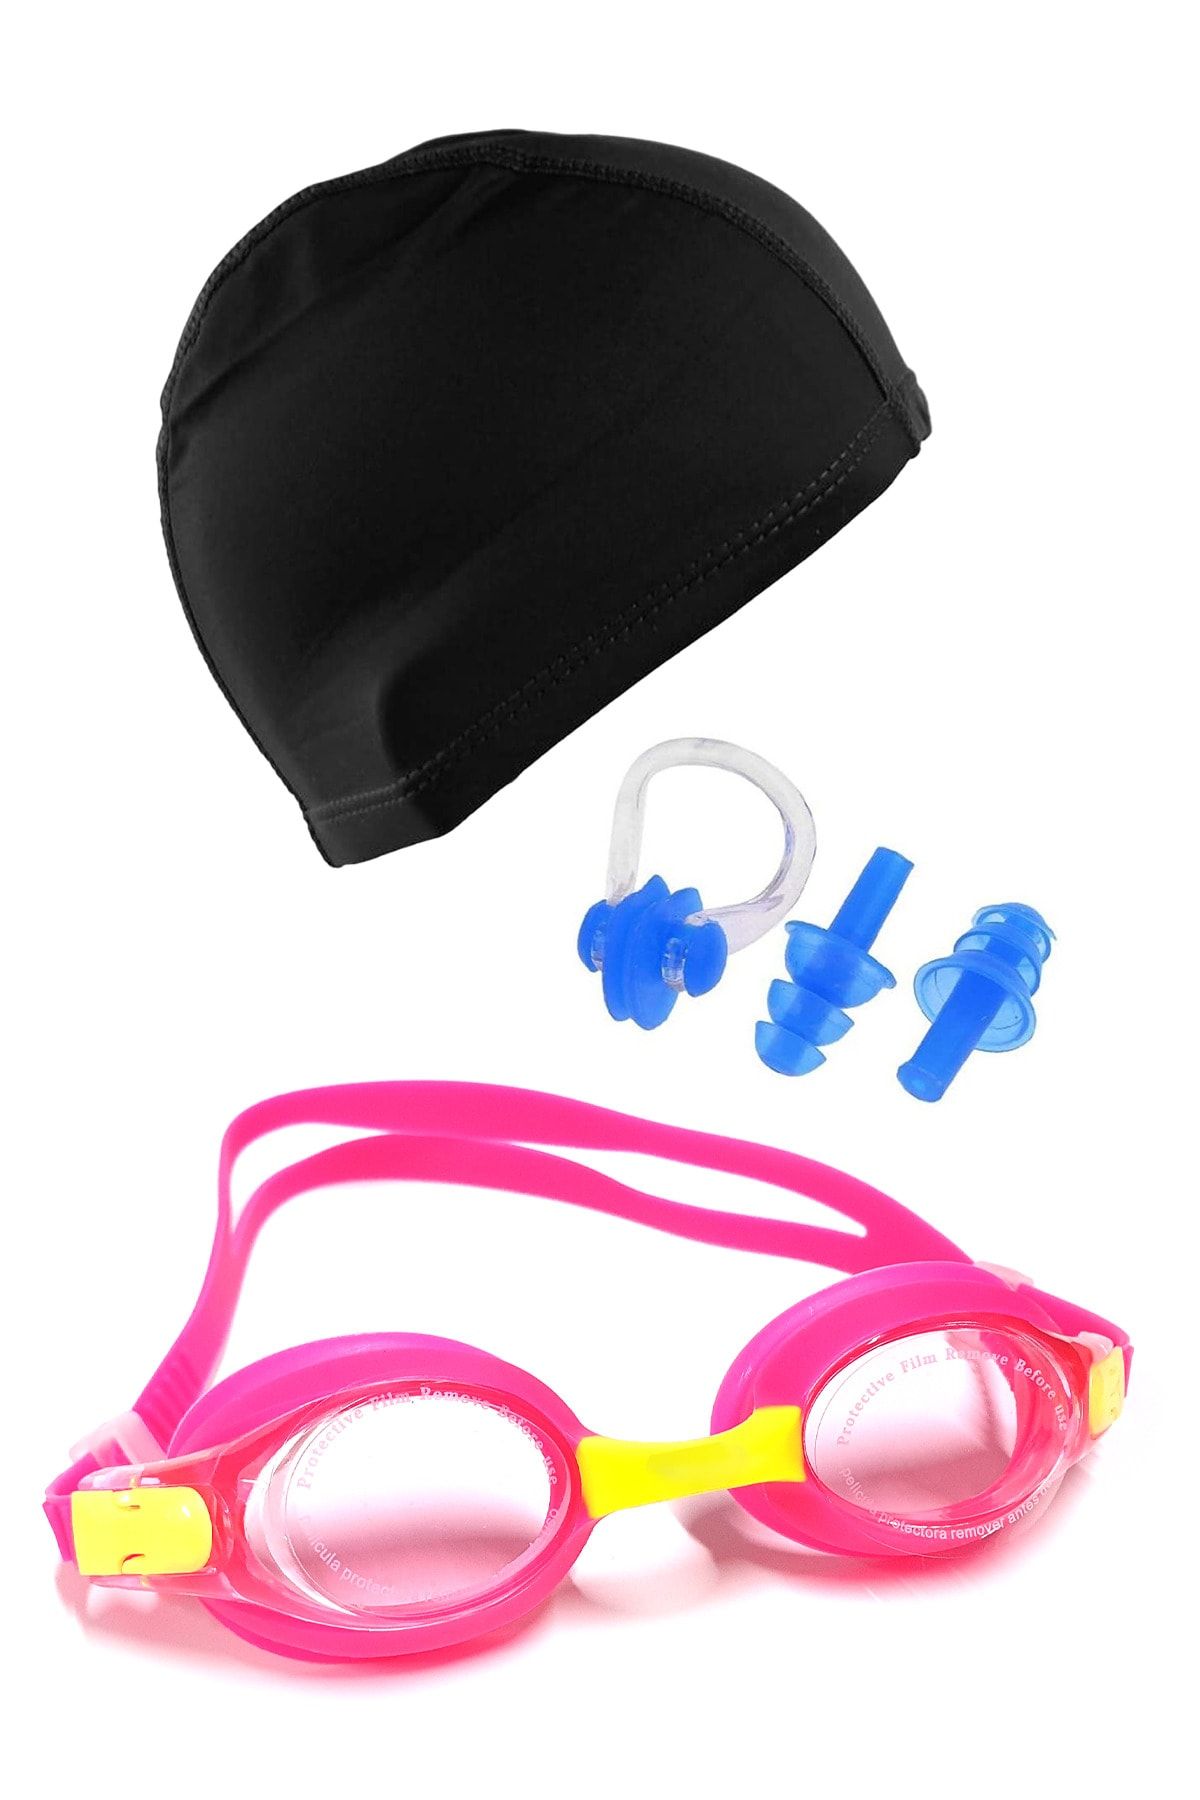 Tosima Çocuk Silikon Havuz Gözlüğü Likra Bone Kulak Tıkacı Ve Burun Klips Seti Full Set